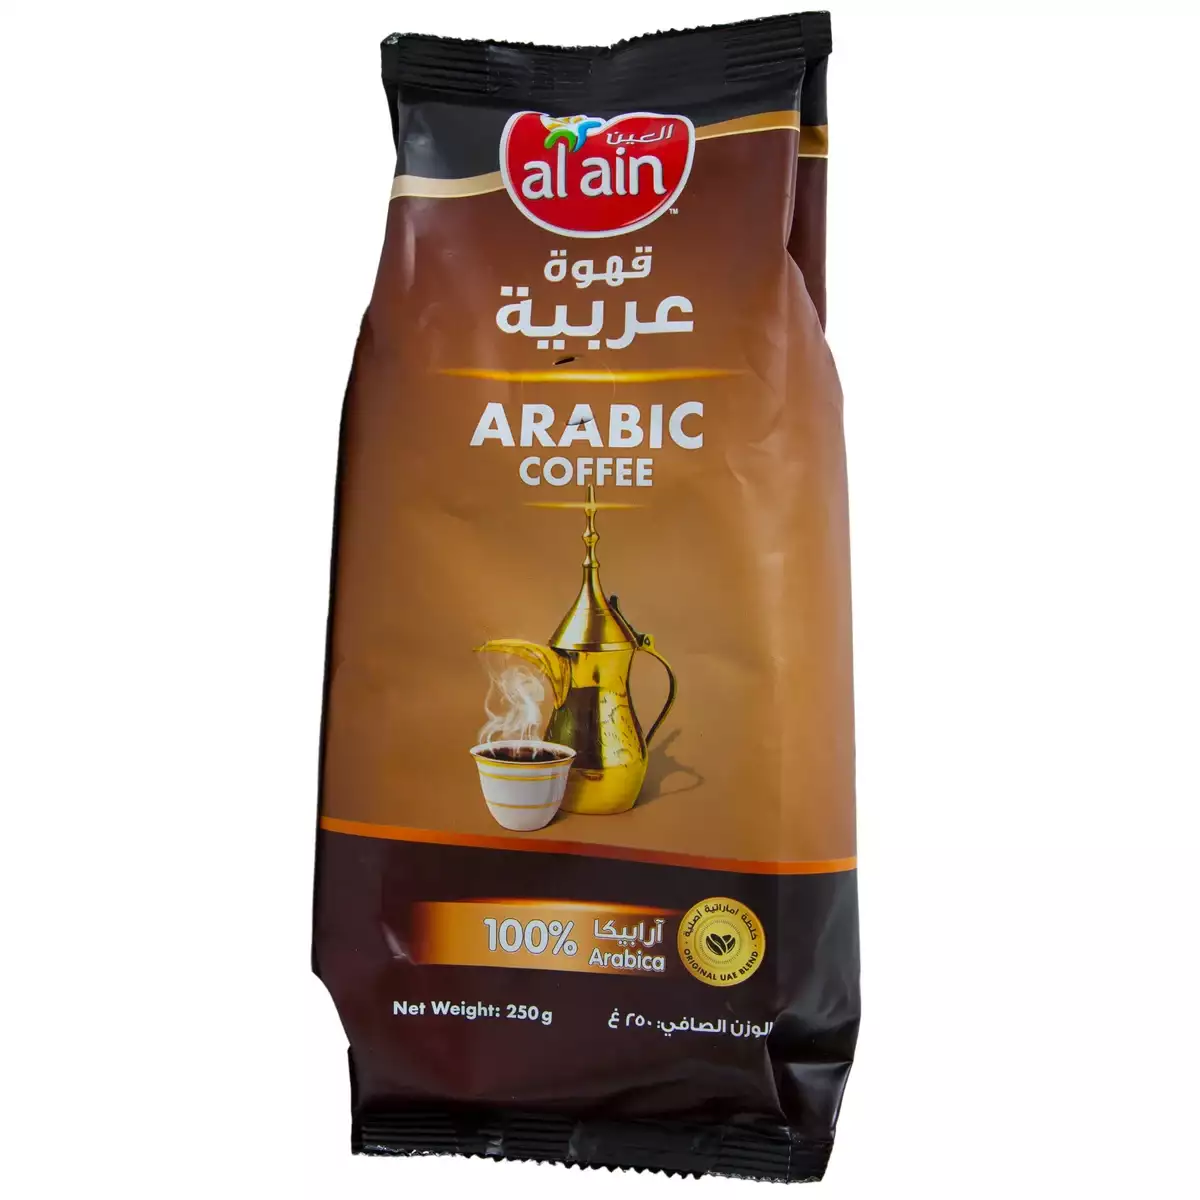 AL AIN ARABIC COFFEE 250G side